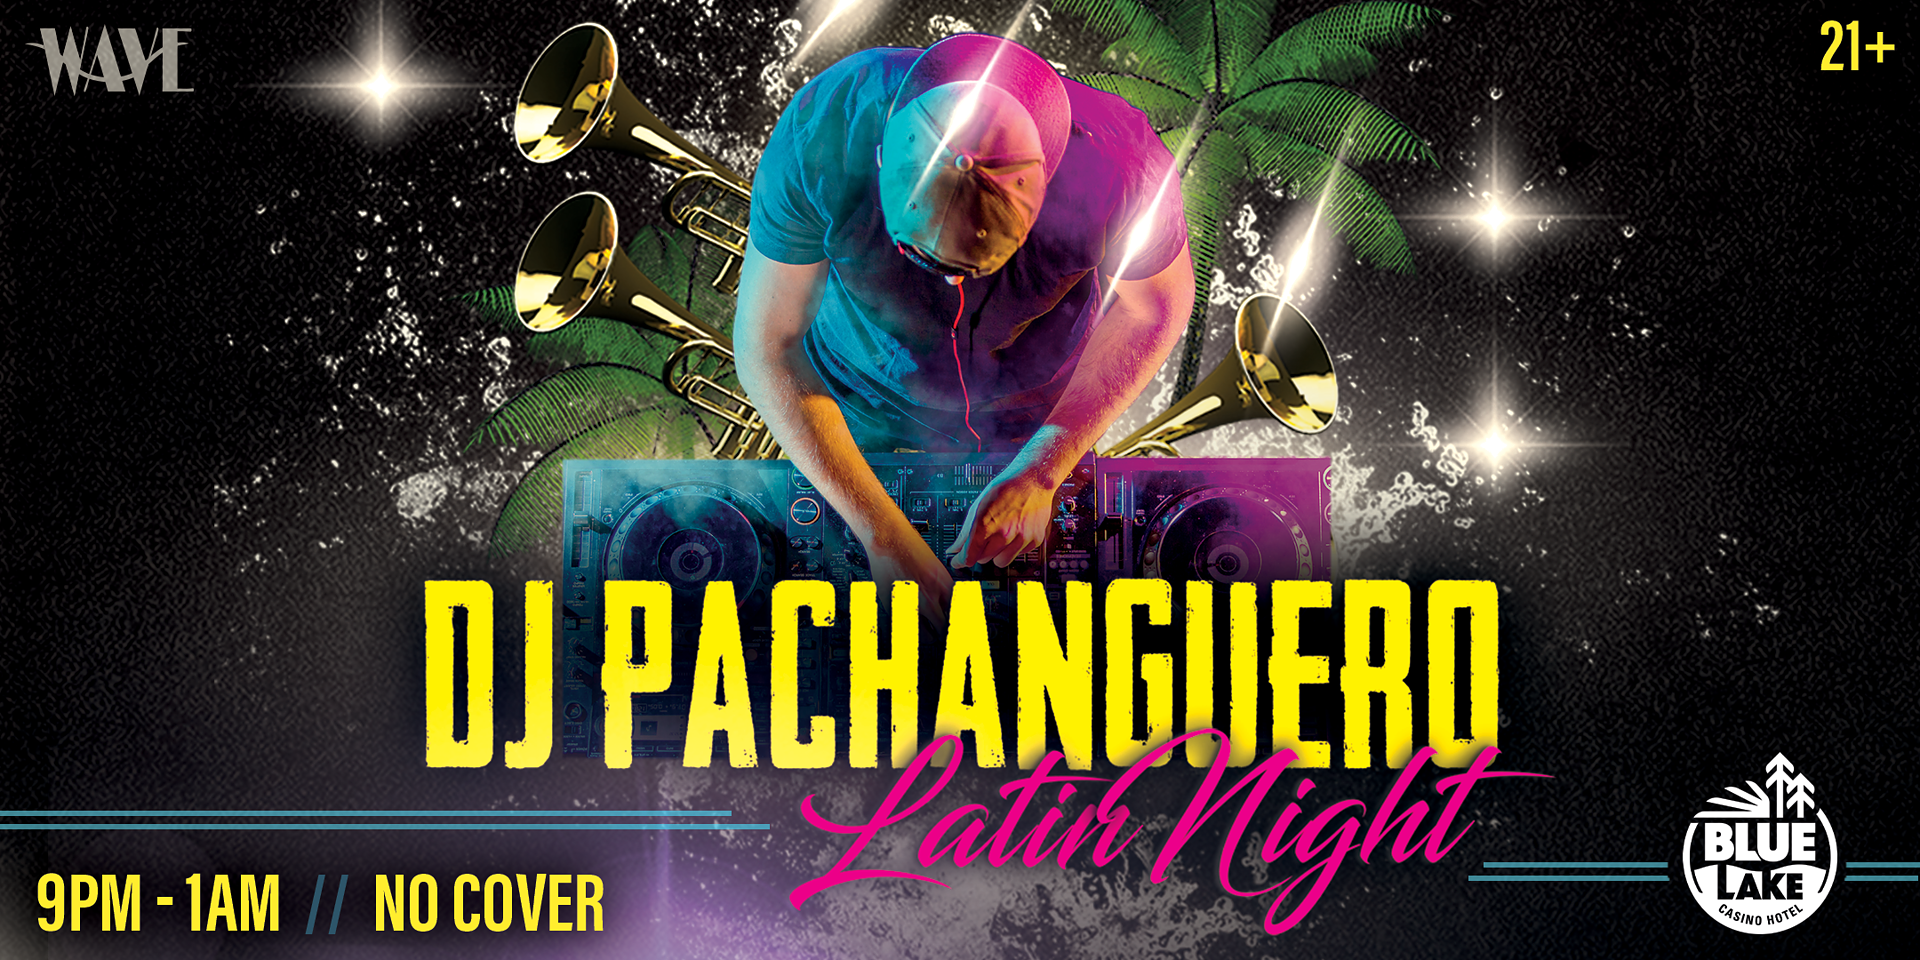 2160x1080 DJ Pachanguero Latin Nights